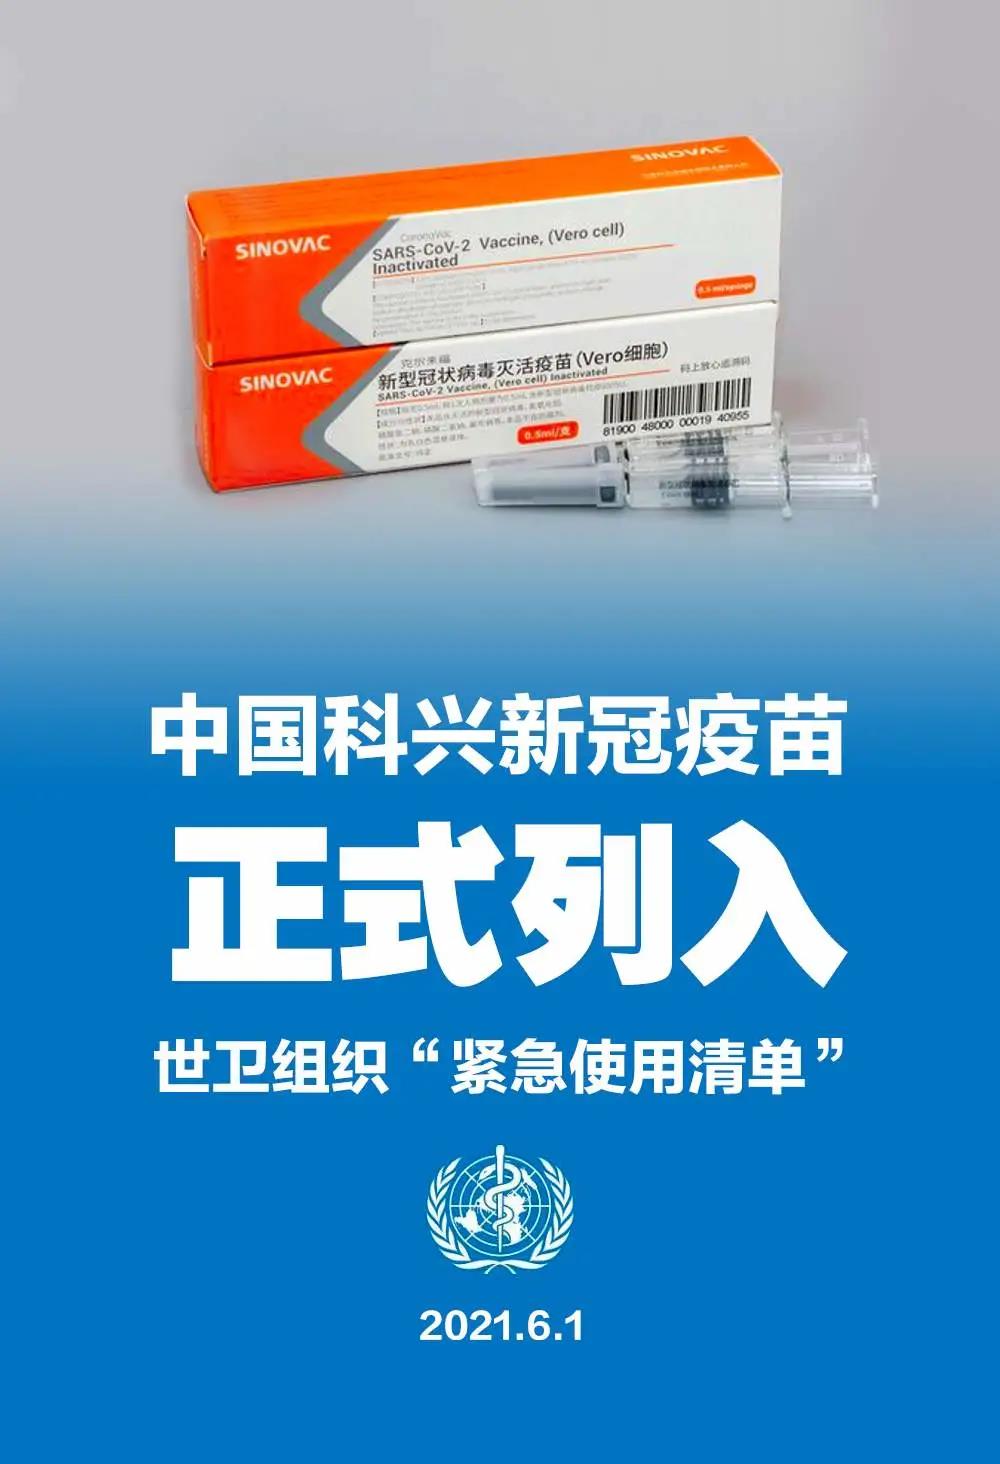 世卫组织将中国科兴疫苗列入紧急使用清单